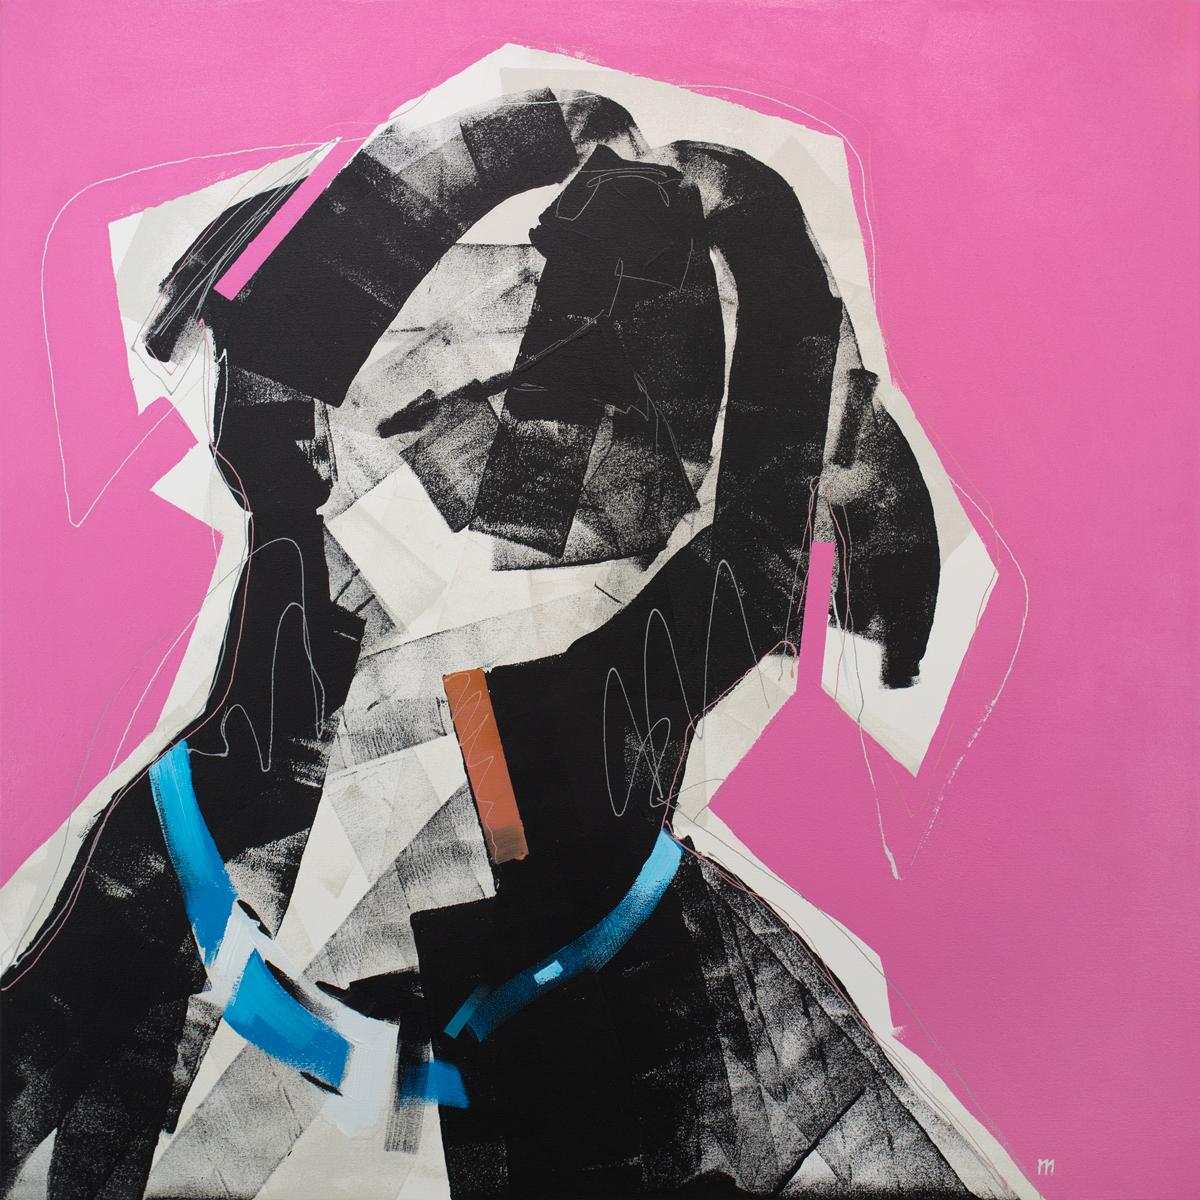 Dieses abstrahierte Gemälde eines Hundes von Russell Miyaki zeichnet sich durch einen lockeren, energiegeladenen Stil und eine lebhafte, farbenfrohe Palette aus. Der Künstler schichtet breite Pinselstriche und dünne Linien übereinander, um die Form